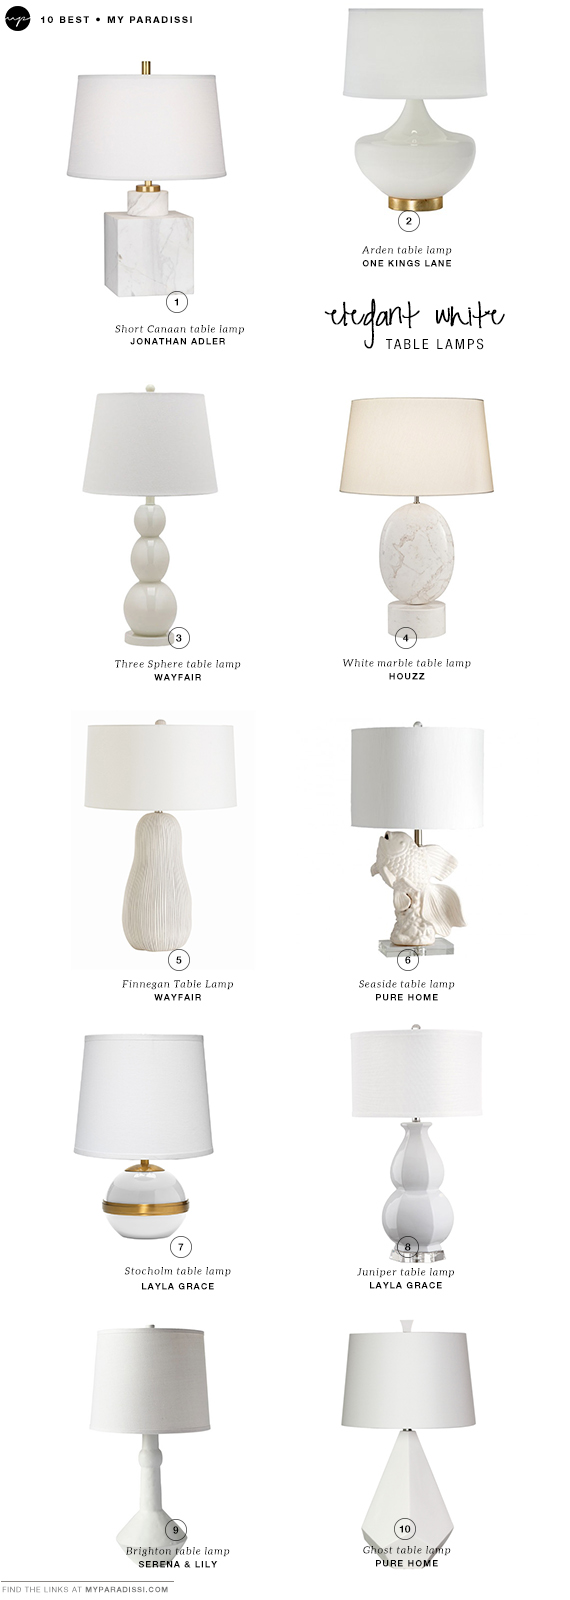 10 BEST: Elegant white table lamps